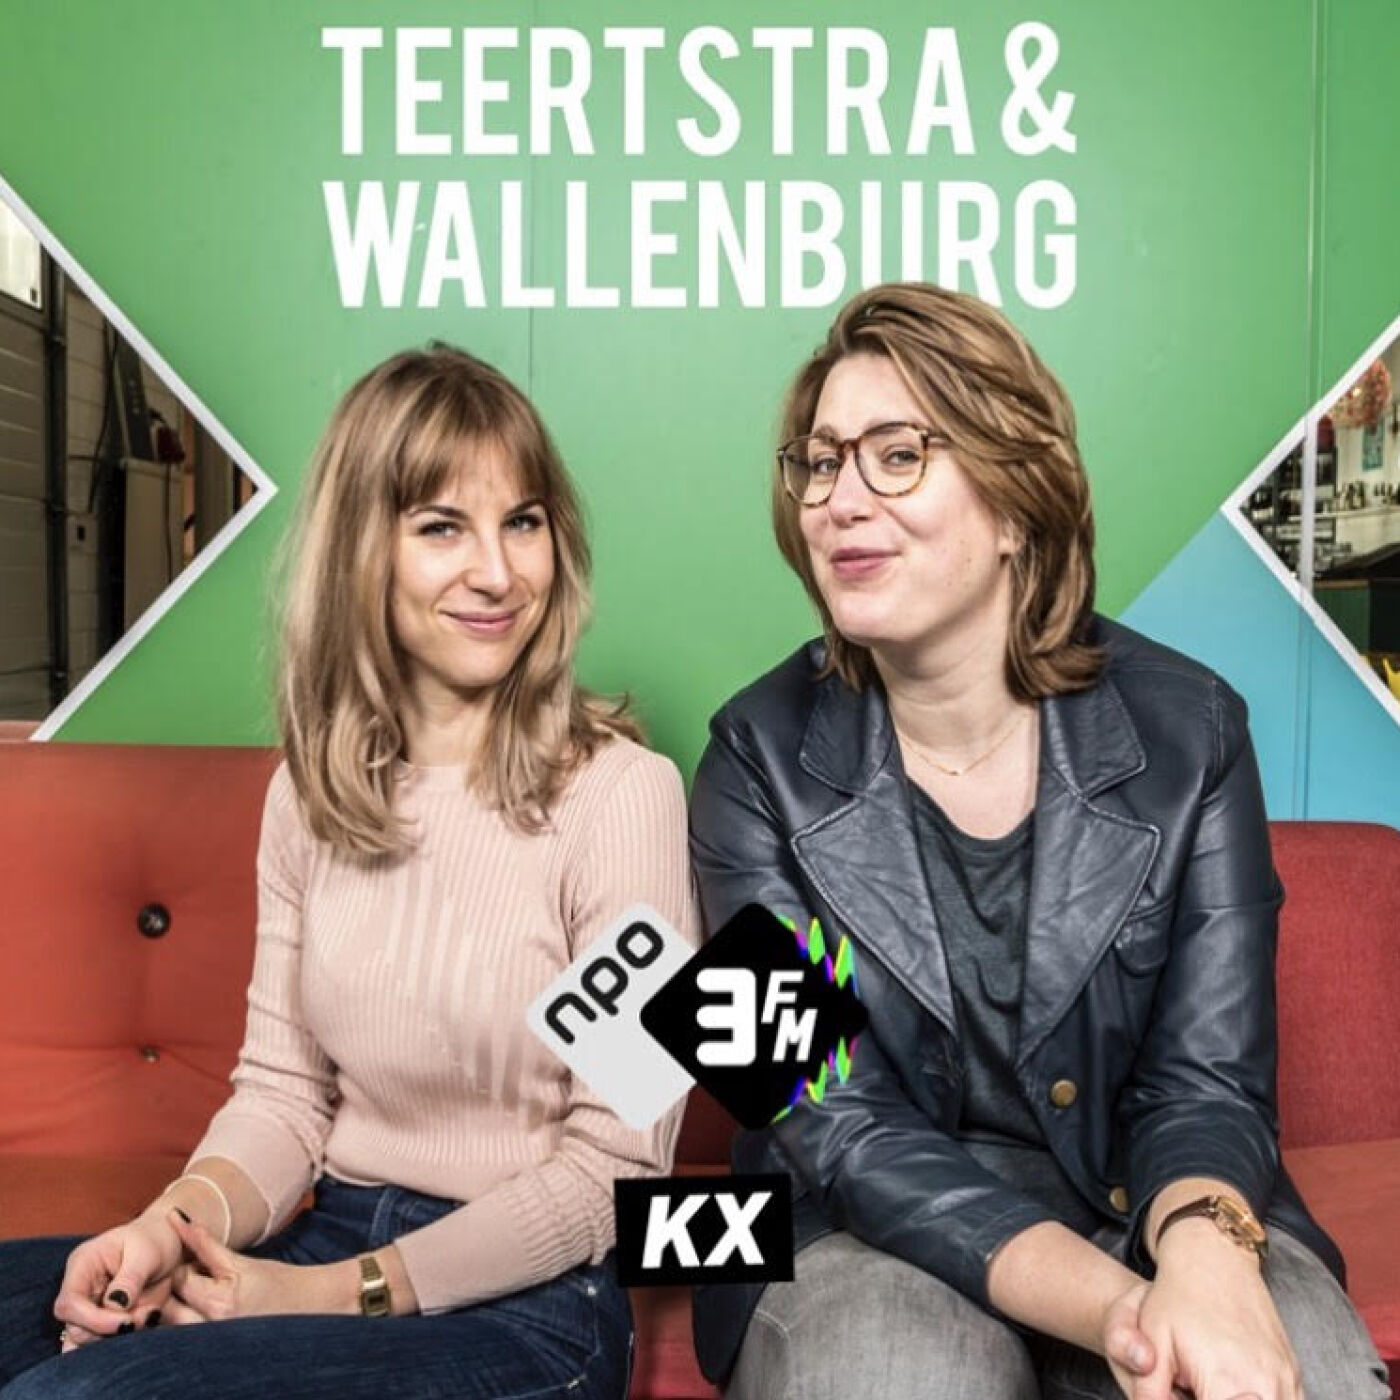 Teertstra & Wallenburg:NPO 3FM KX / NTR